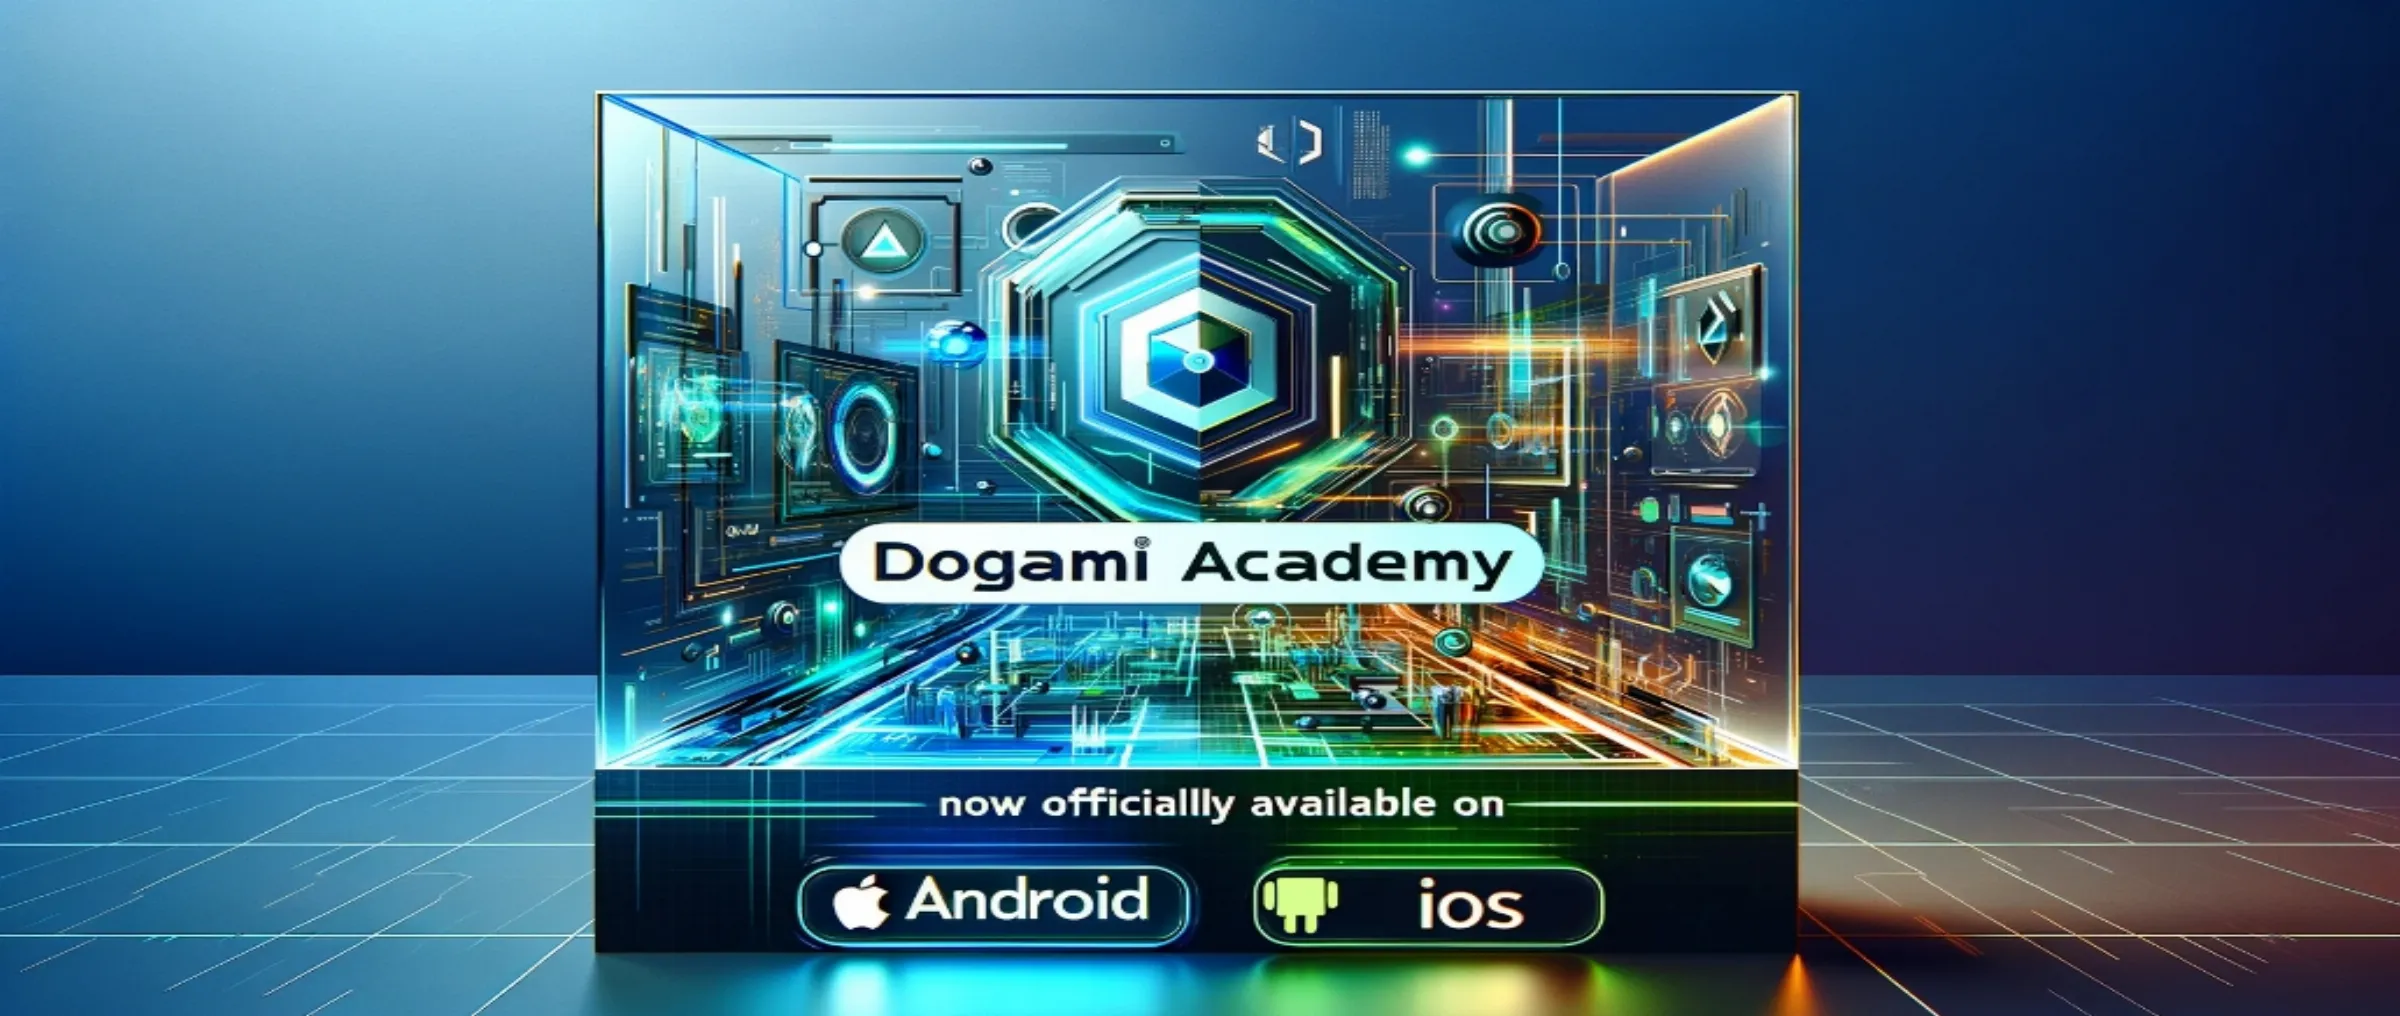 DOGAMÍ Academy теперь доступна официально на Android и iOS